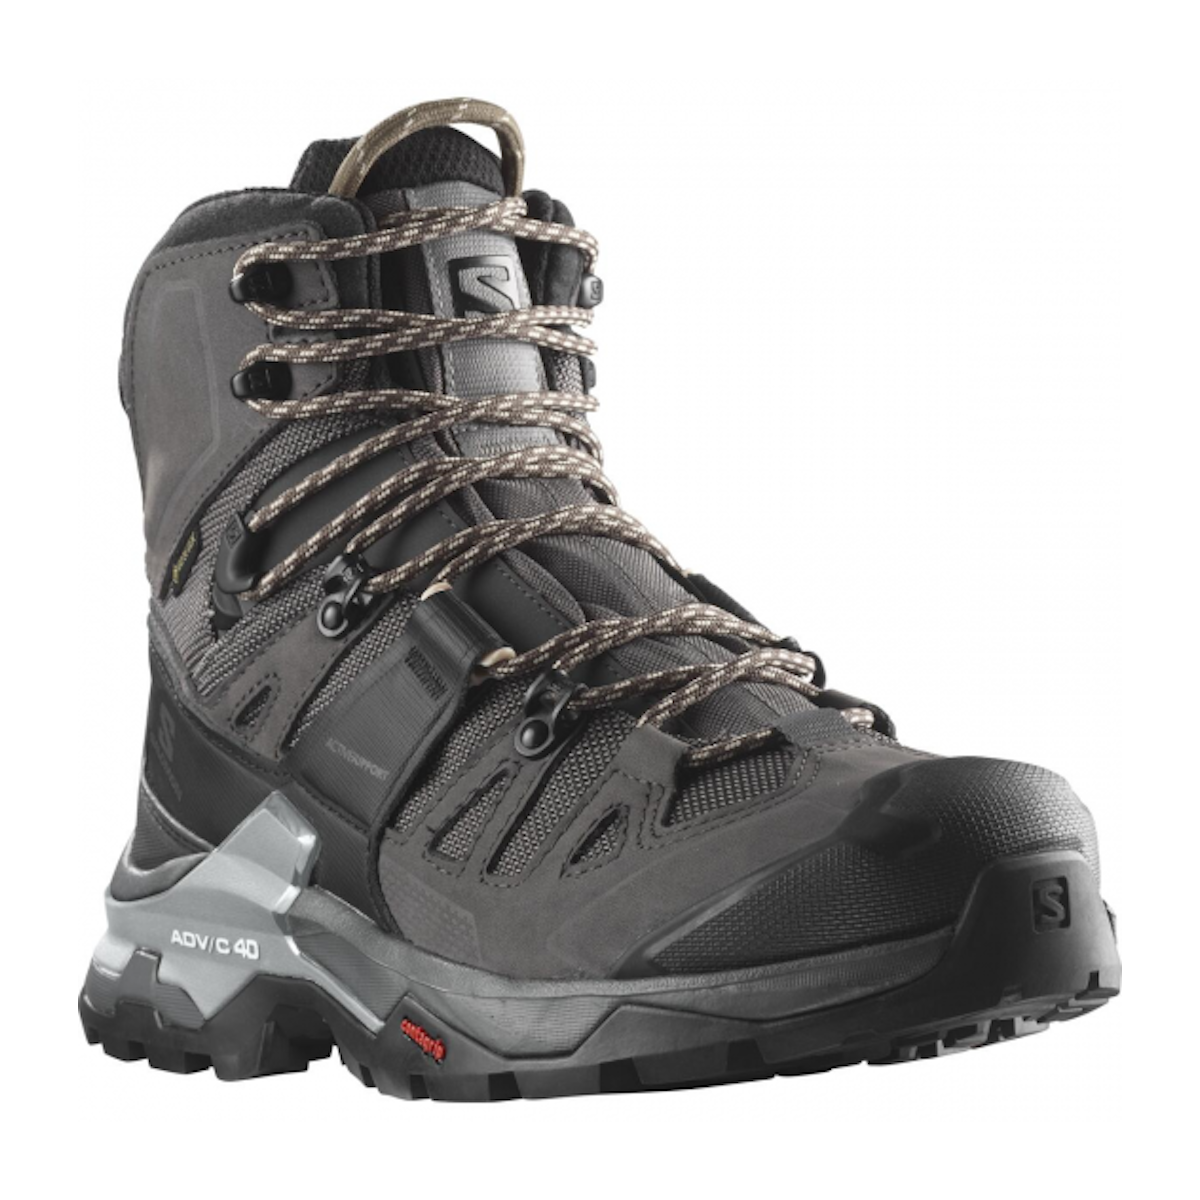 SALOMON QUEST 4 GTX W hiking footwear - grey/black